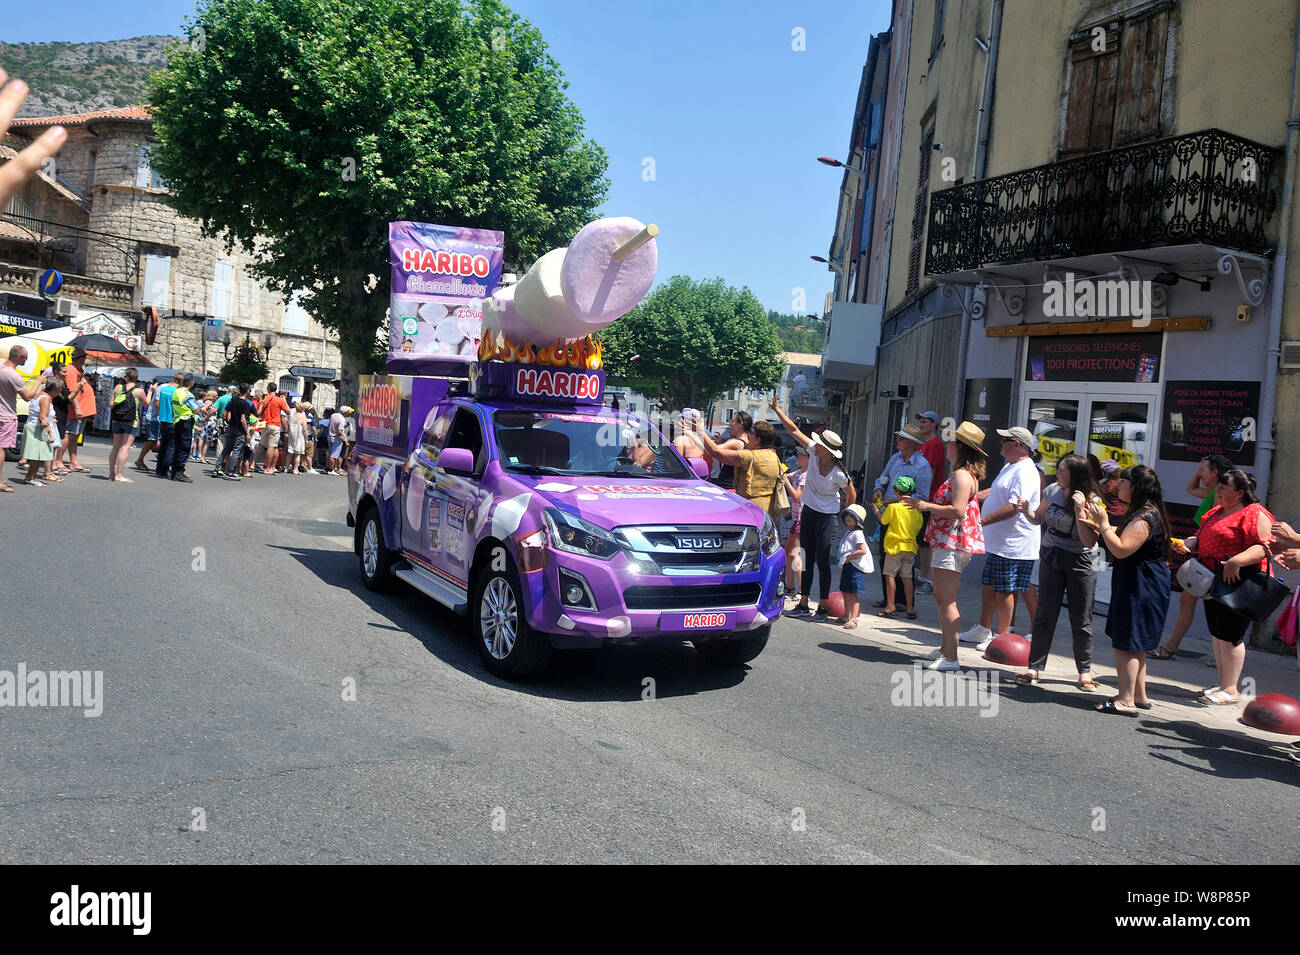 Passage d'une voiture publicitaire Haribo dans la caravane du Tour de France à Anduze Banque D'Images